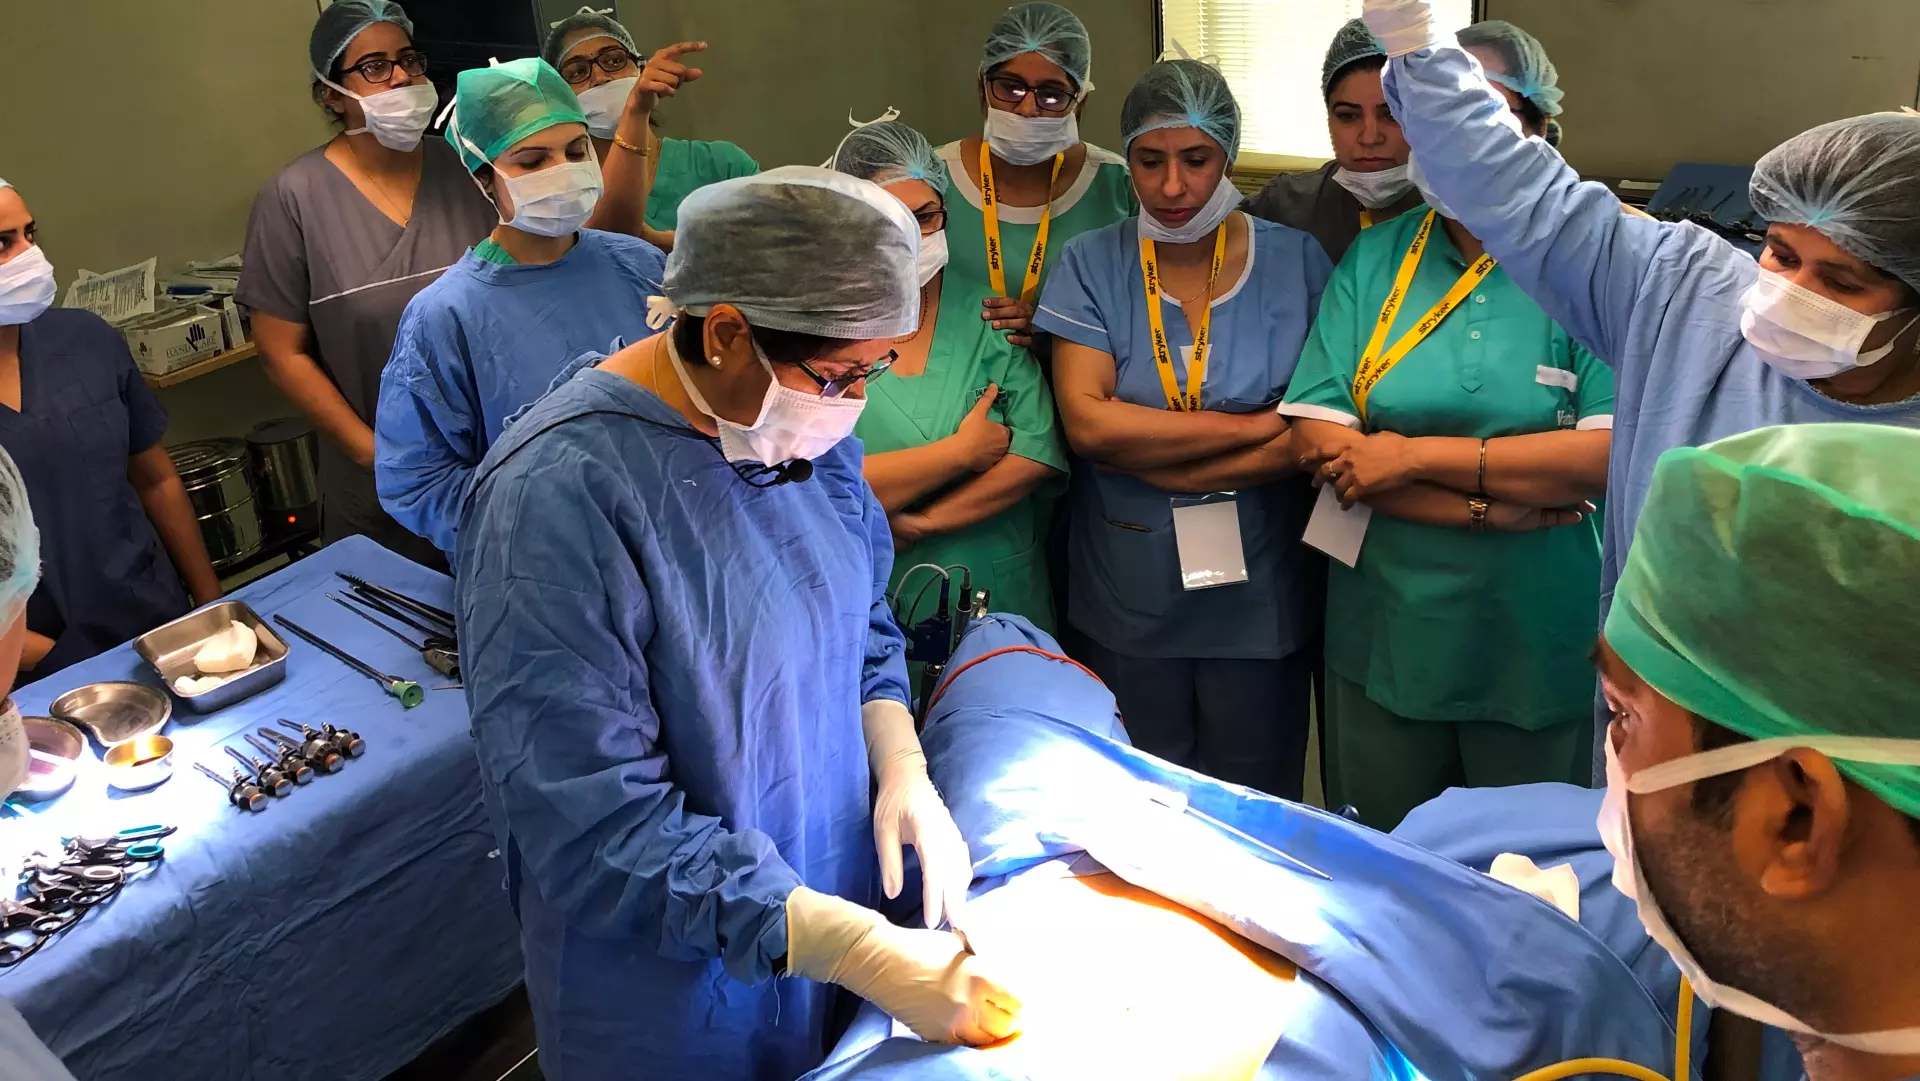 Dr Nutan Jain Best Gynaecologist in Uttar Pradesh, Best Laparoscopic Surgeon in Muzaffarnagar, Best IVF Specialist in India, Best Gynaecologist at Vardhman Hospital, Best Laparoscopic Surgeon in Uttar Pradesh, Best Laparoscopic Surgeon in India, Best Surgeon for Laparoscopic Hysterectomy in Uttar Pradesh India